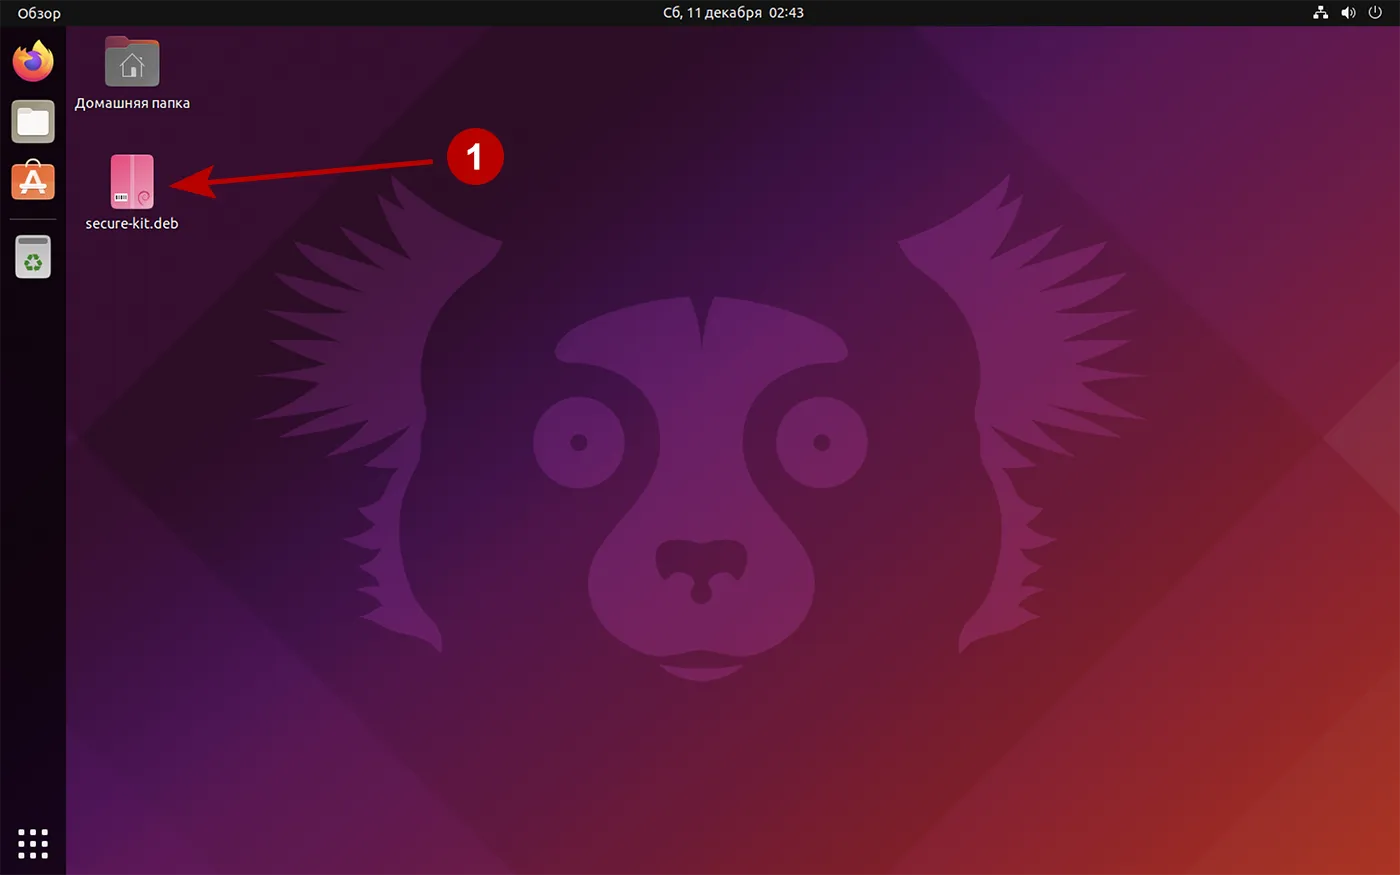 Скачайте на рабочий стол Secure Kit для Ubuntu